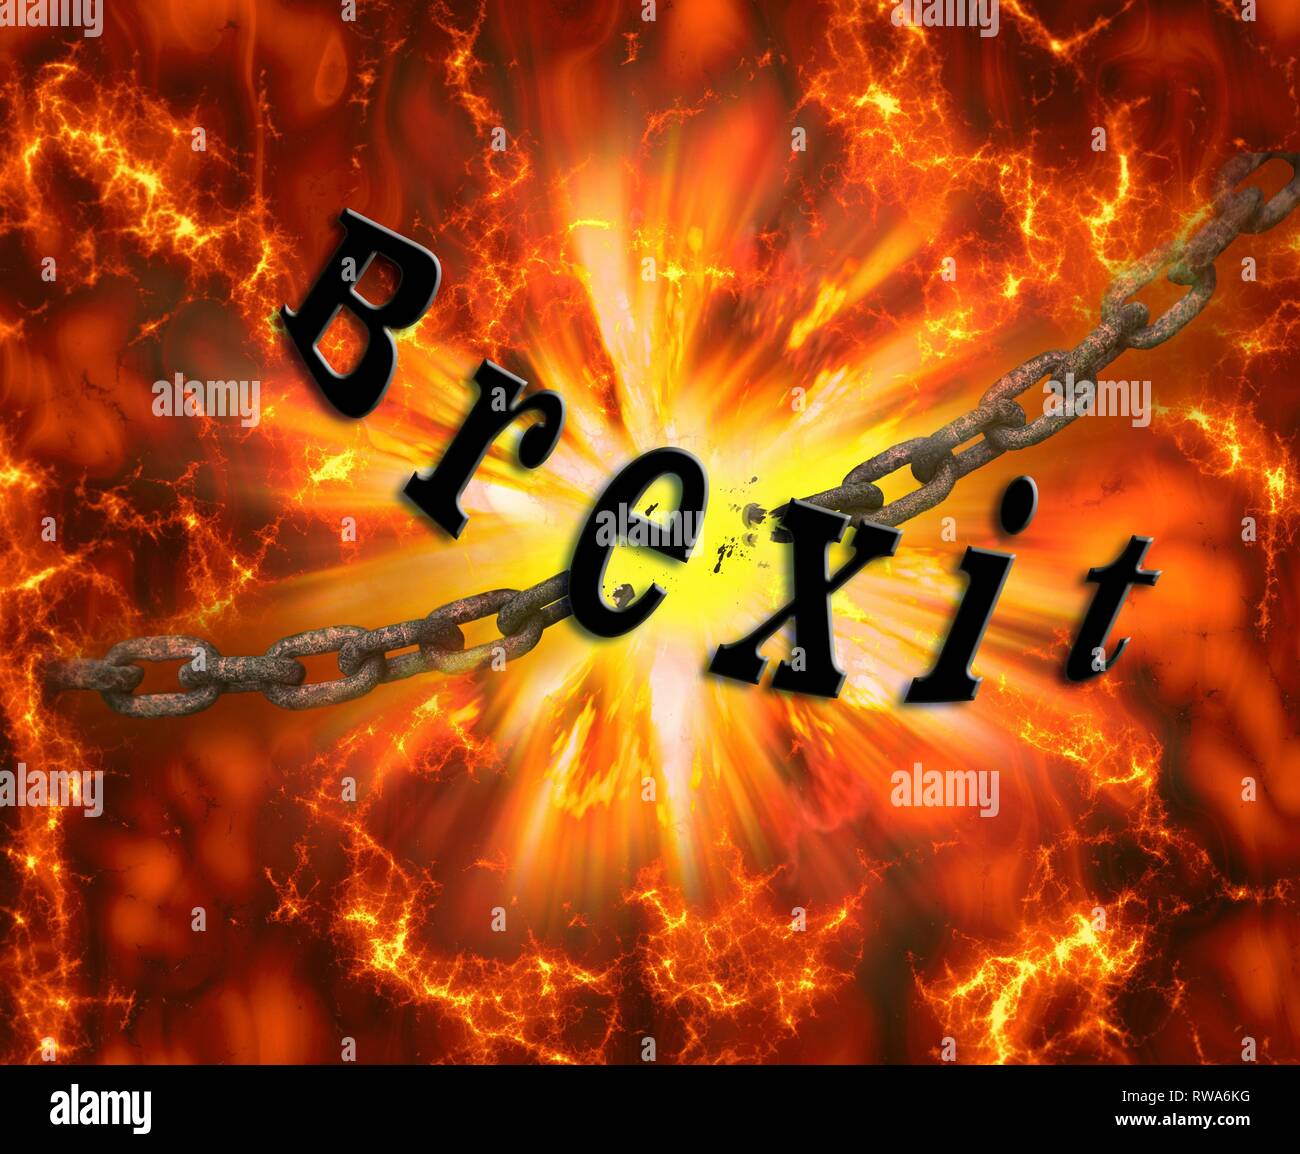 Photo symbole Brexit, Grande Bretagne la sortie de l'UE, firestorm, soufflé de la chaîne, d'explosion, Allemagne Banque D'Images